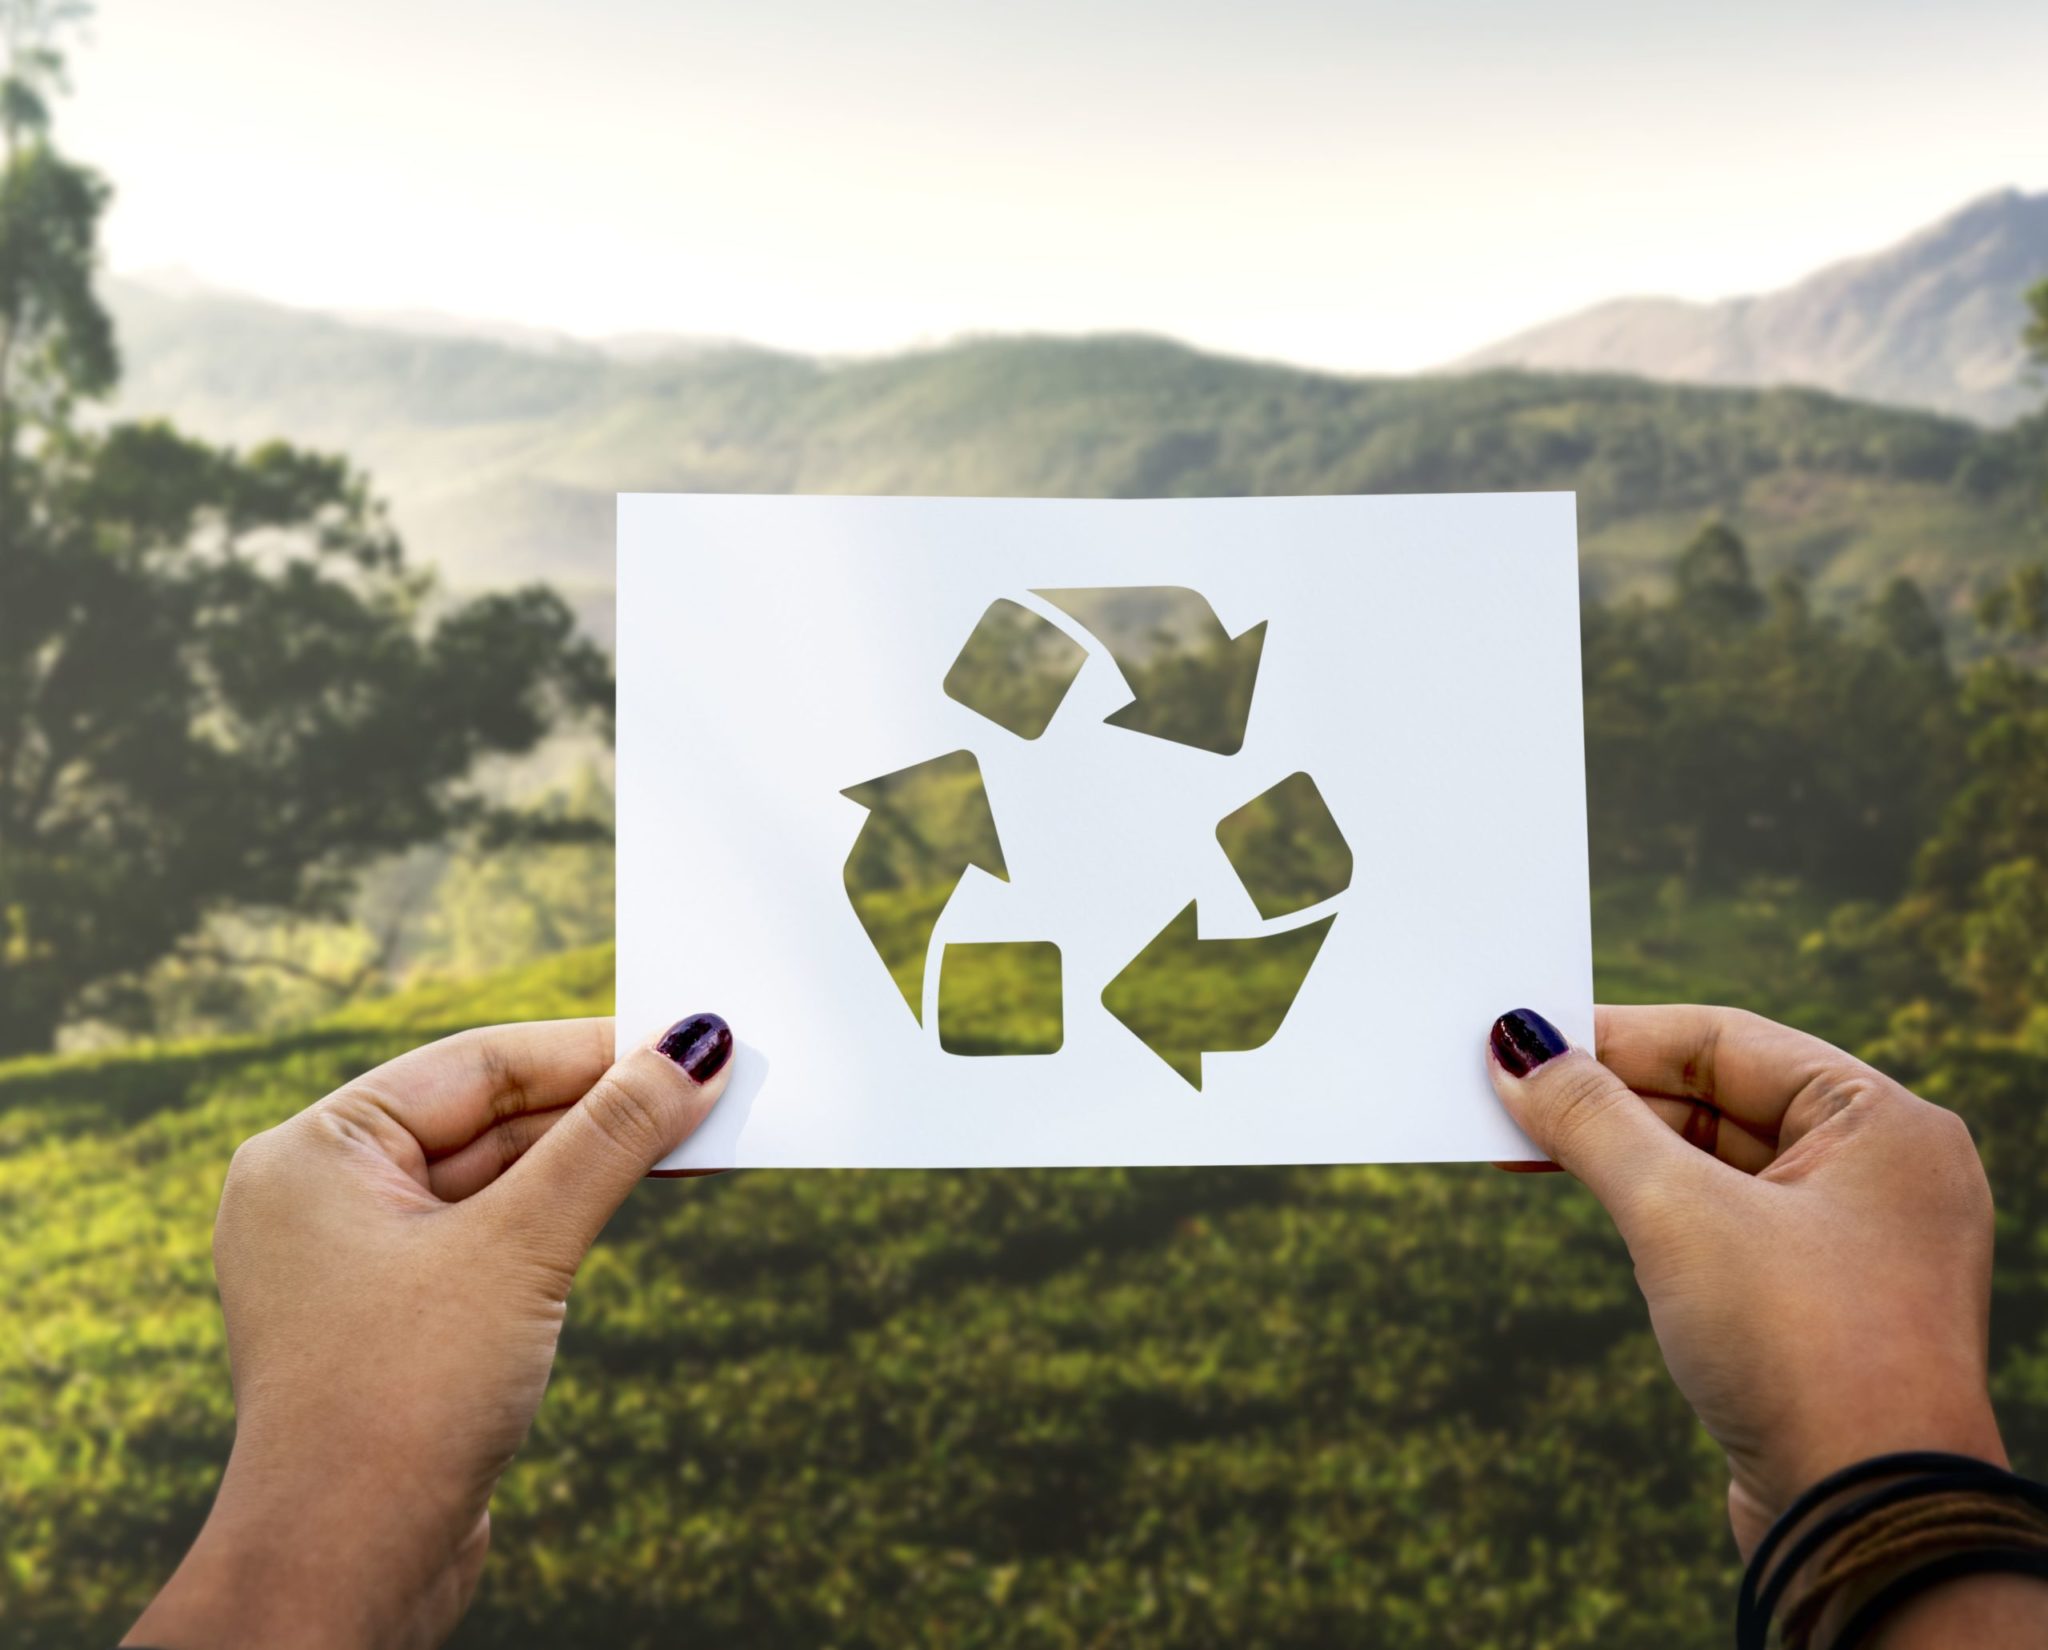 recyclage zéro déchet zero waste home - pranaloé - eshop cosmétiques bio